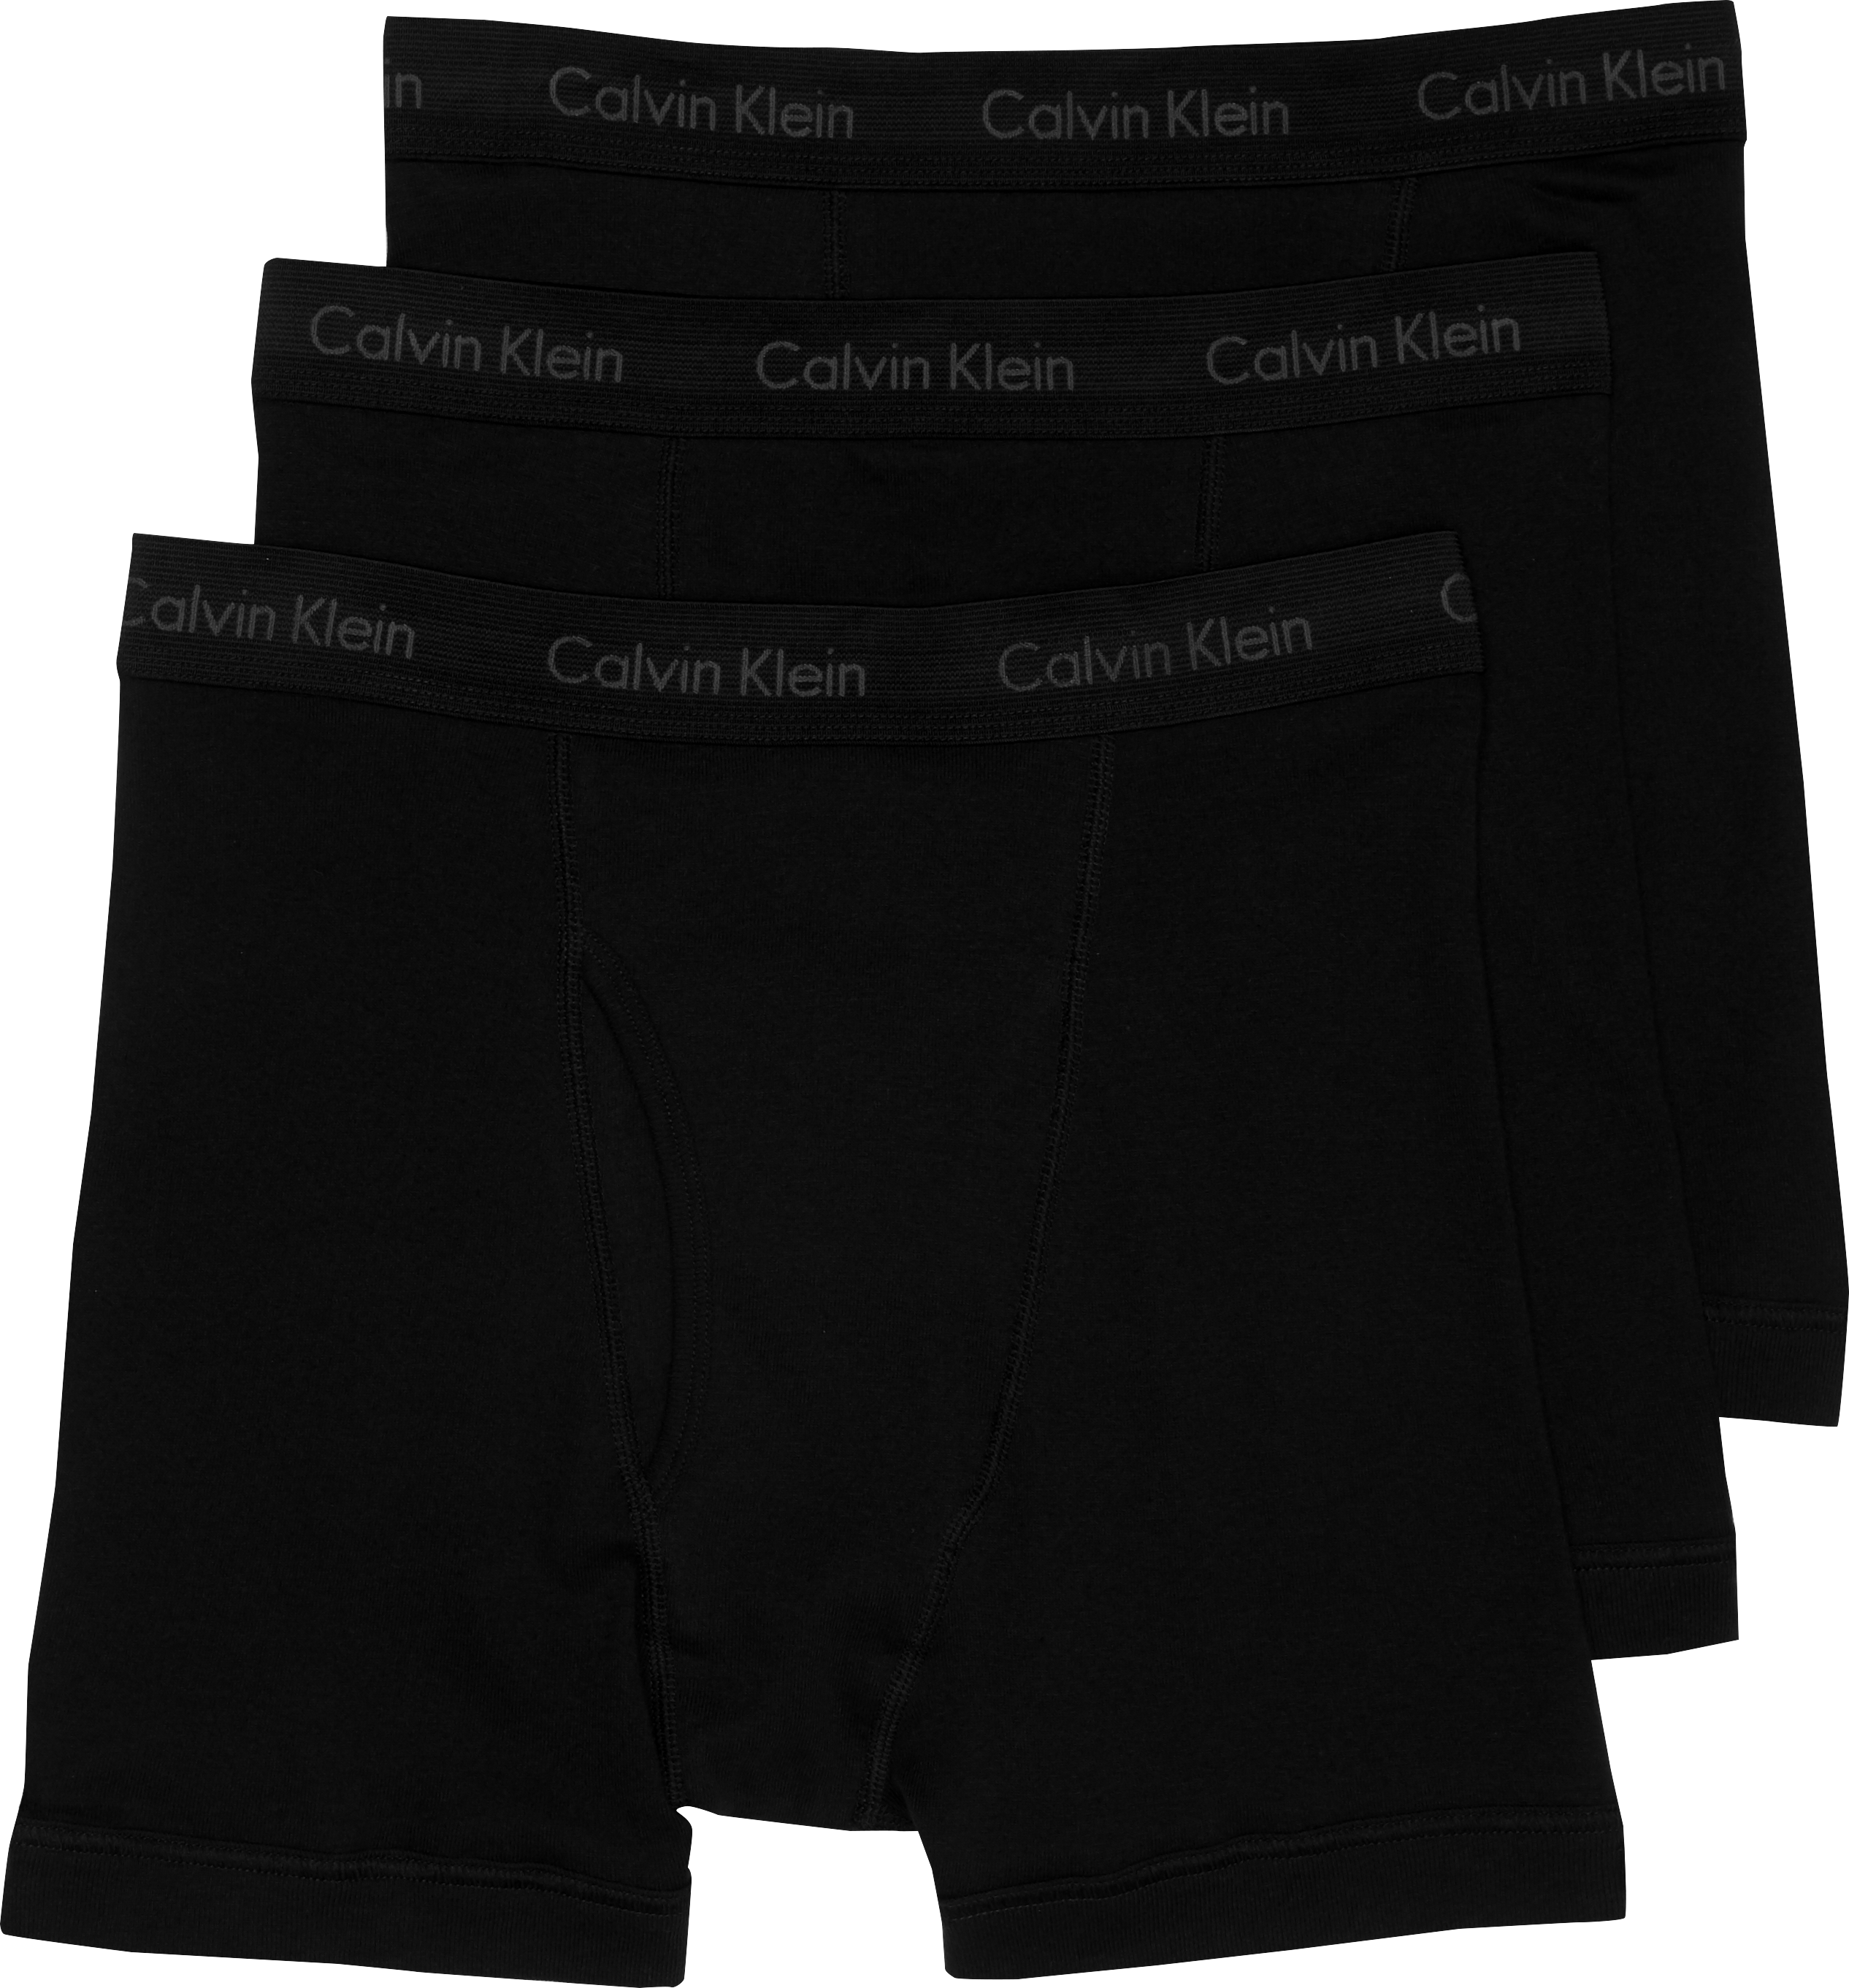 calvin klein boxers canada